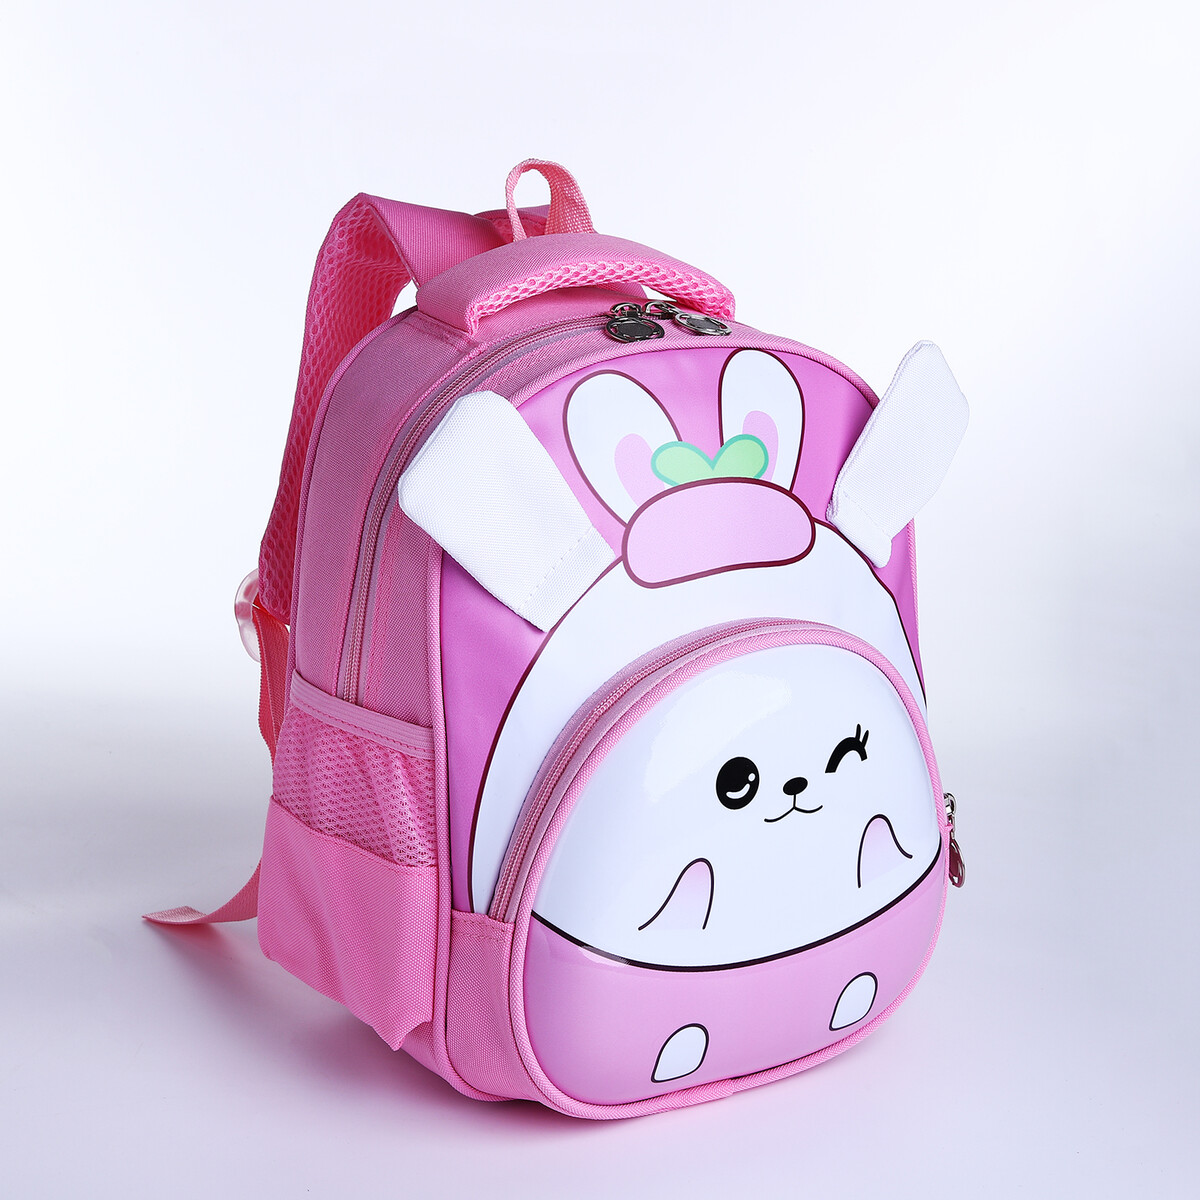 Рюкзак детский на молнии, 3 наружных кармана, цвет розовый рюкзак отдел на молнии 2 наружных кармана розовый